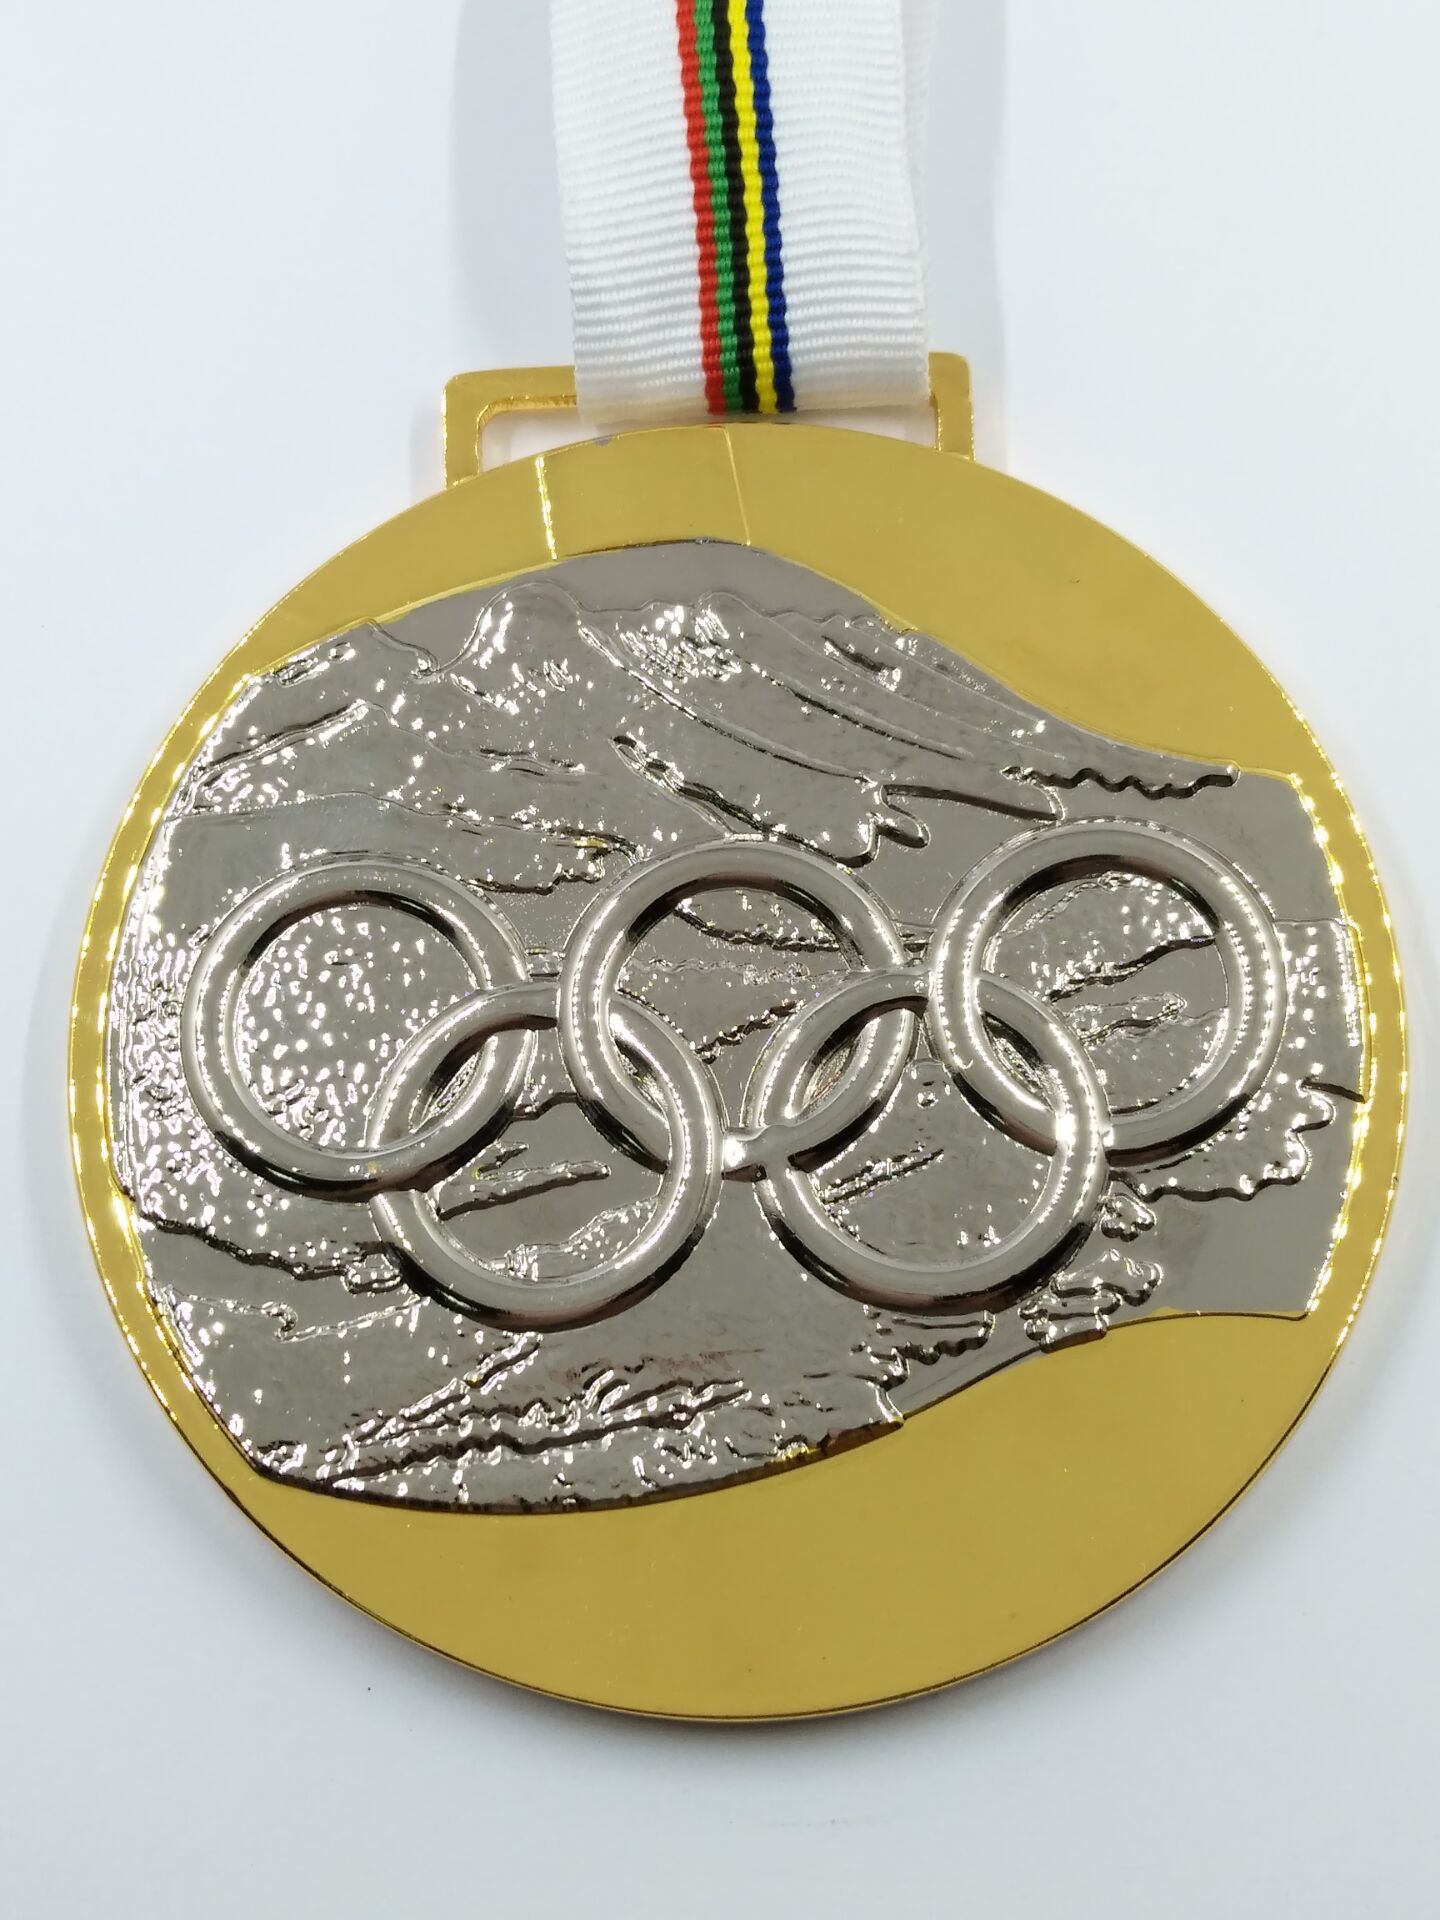 Medallas olímpicas de la colección con la cinta